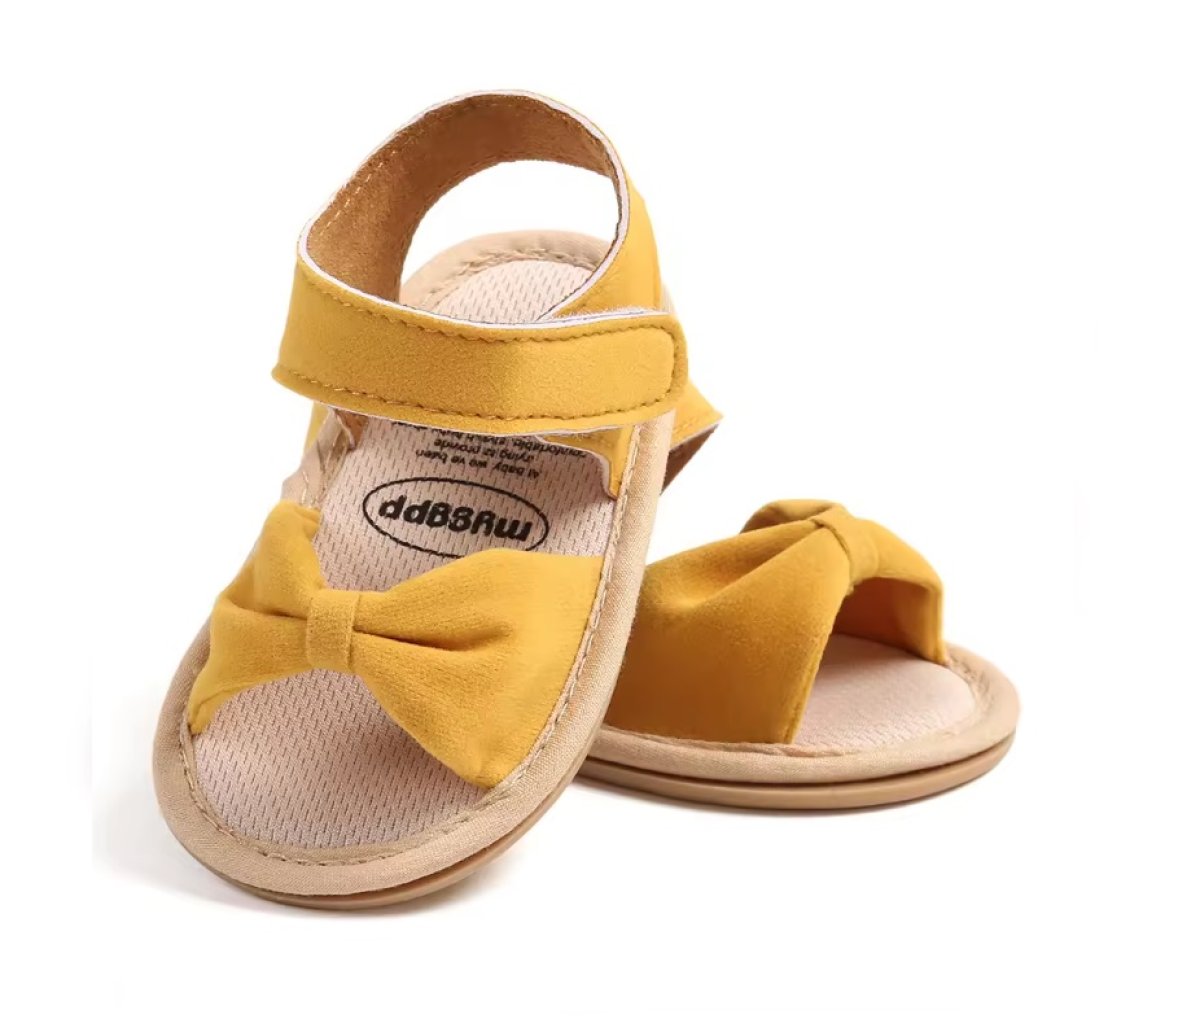 Sandálky 0-6 měsíců / M2057-2 / žlutá